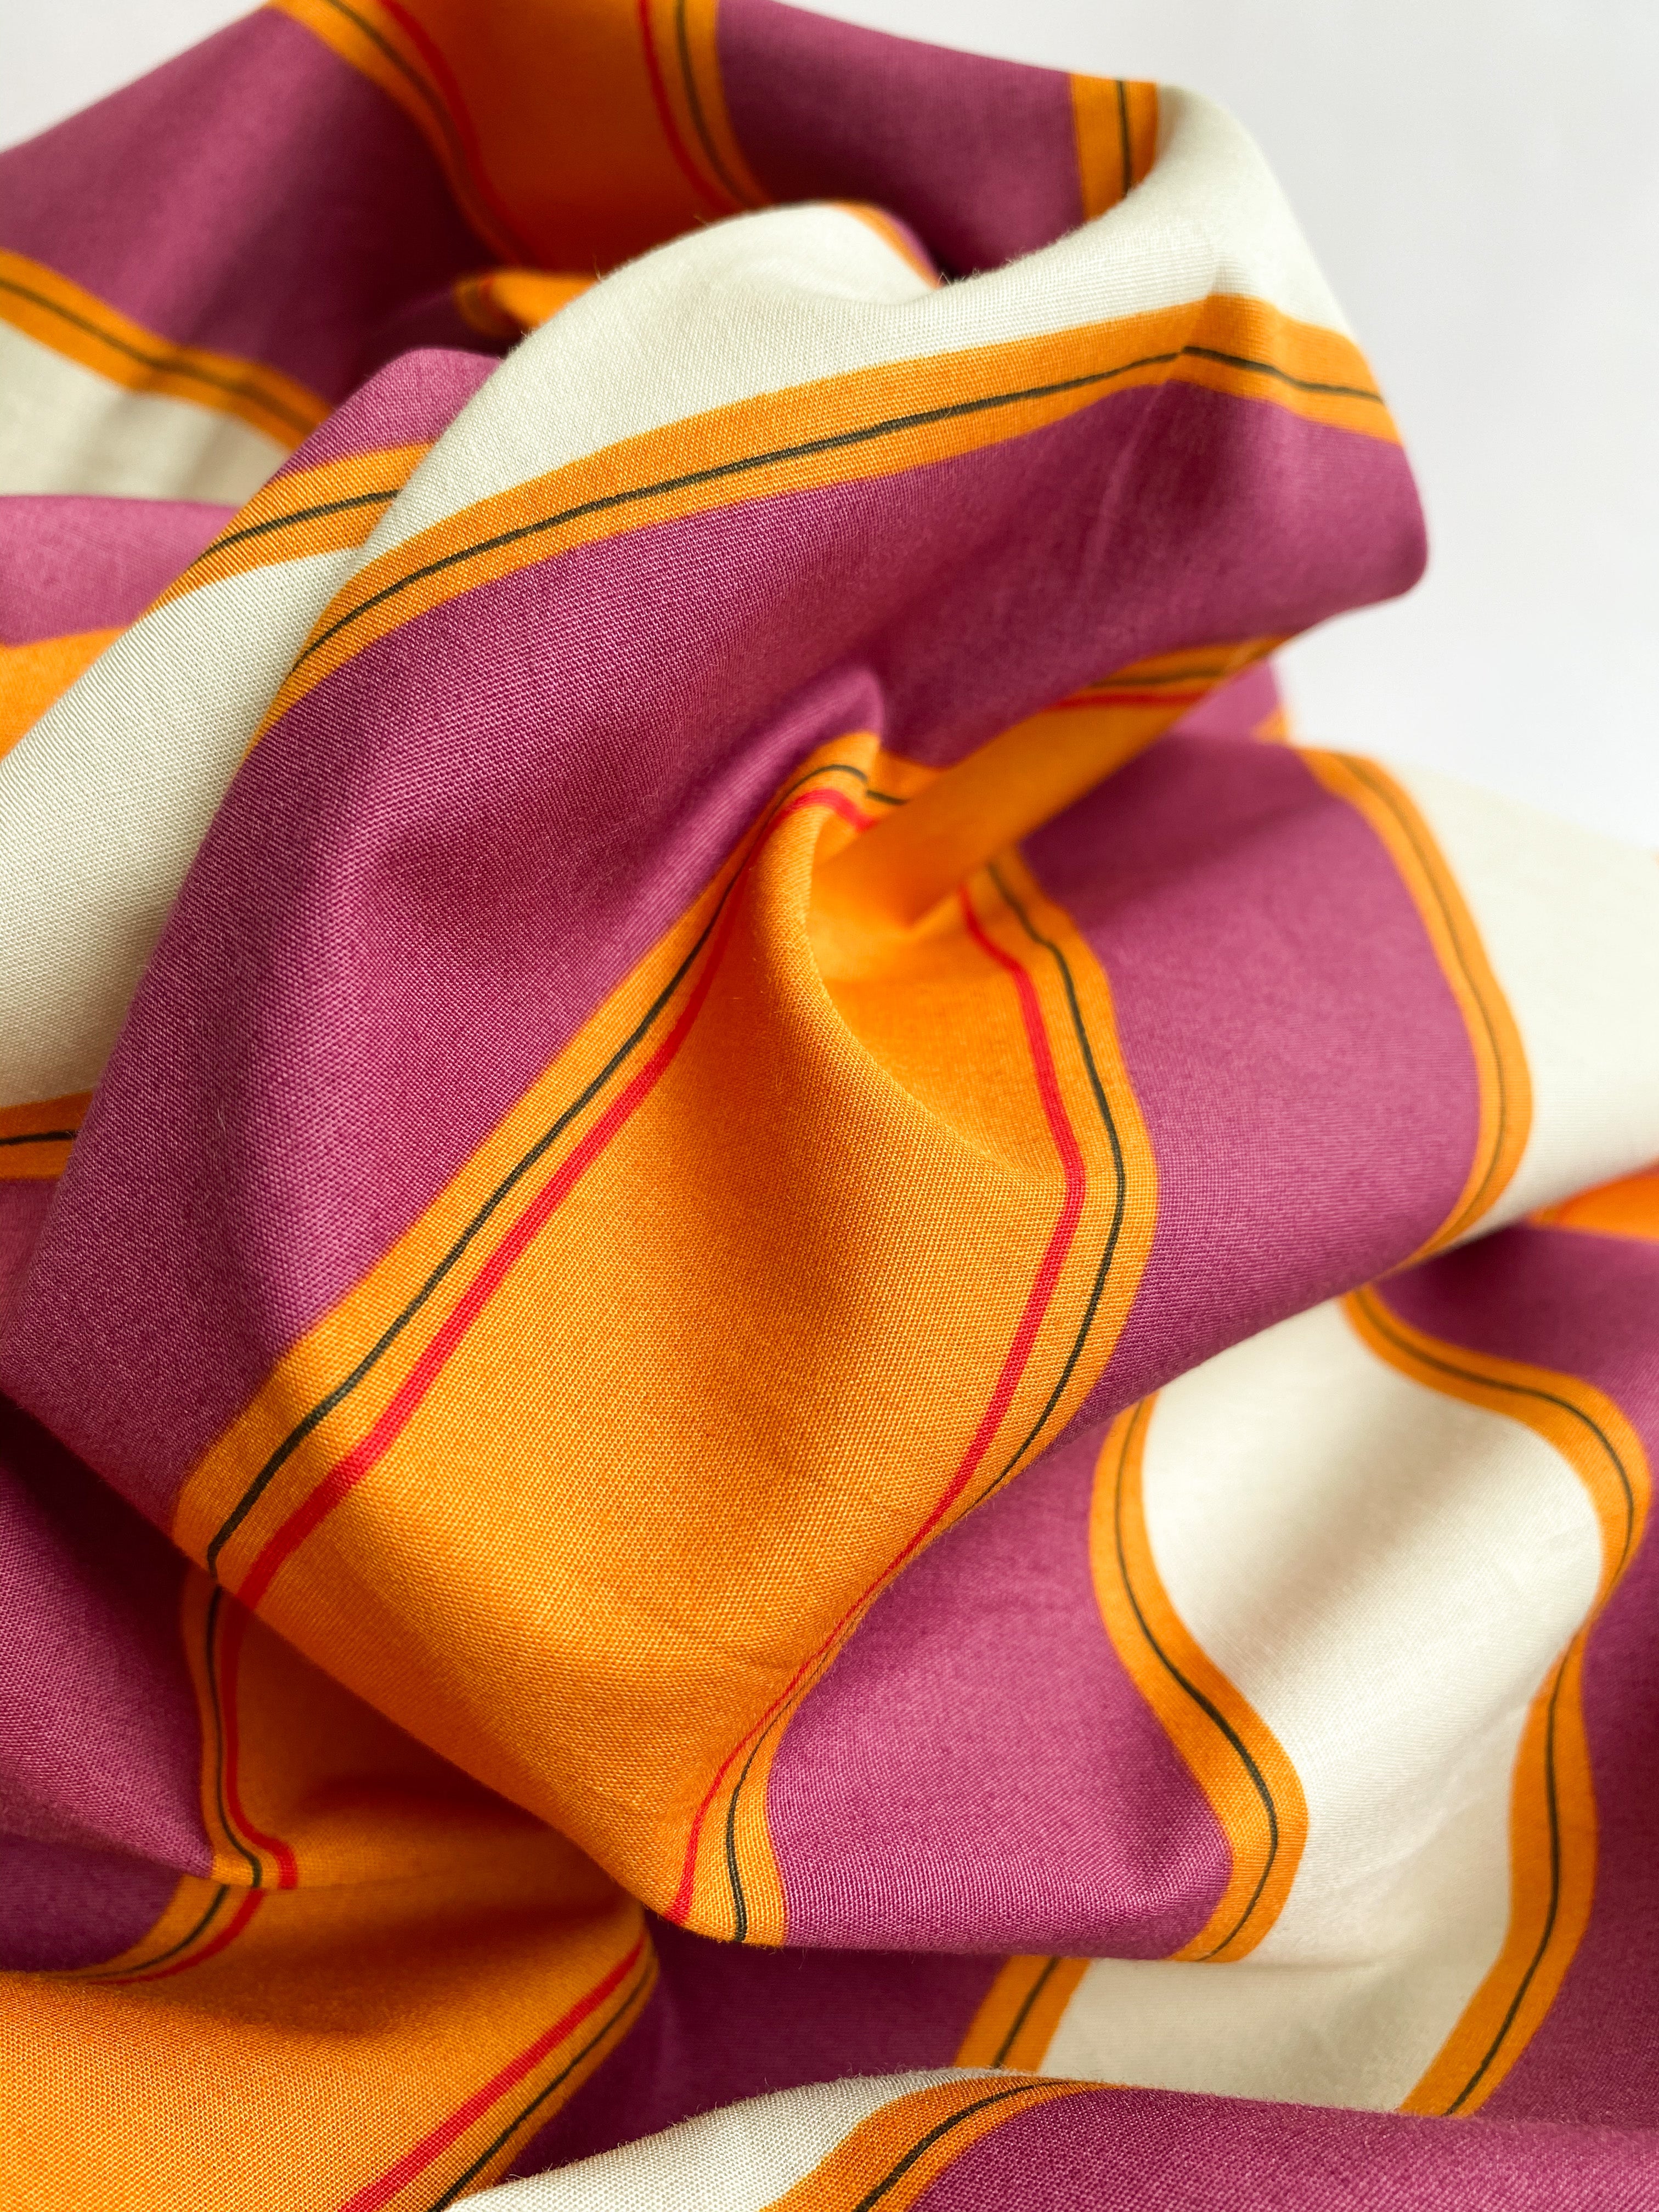 Baumwoll Stoff mit Streifen in lila und orange